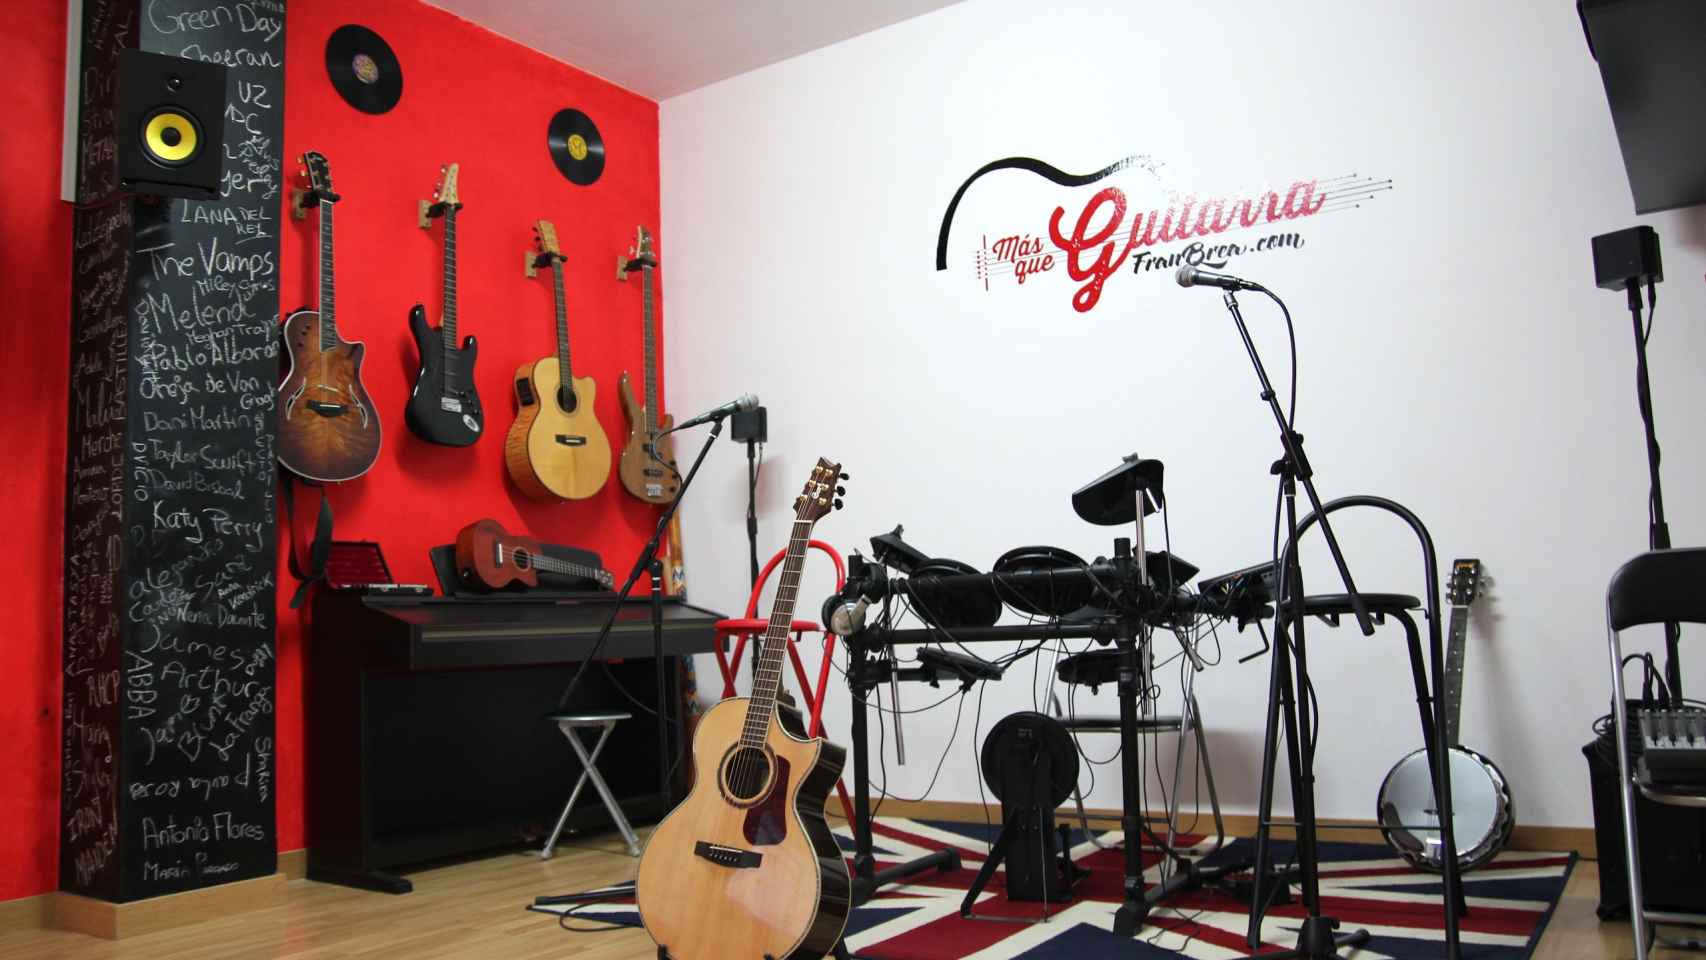 Escuela Más que guitarra en Vigo. Foto: Cedida.